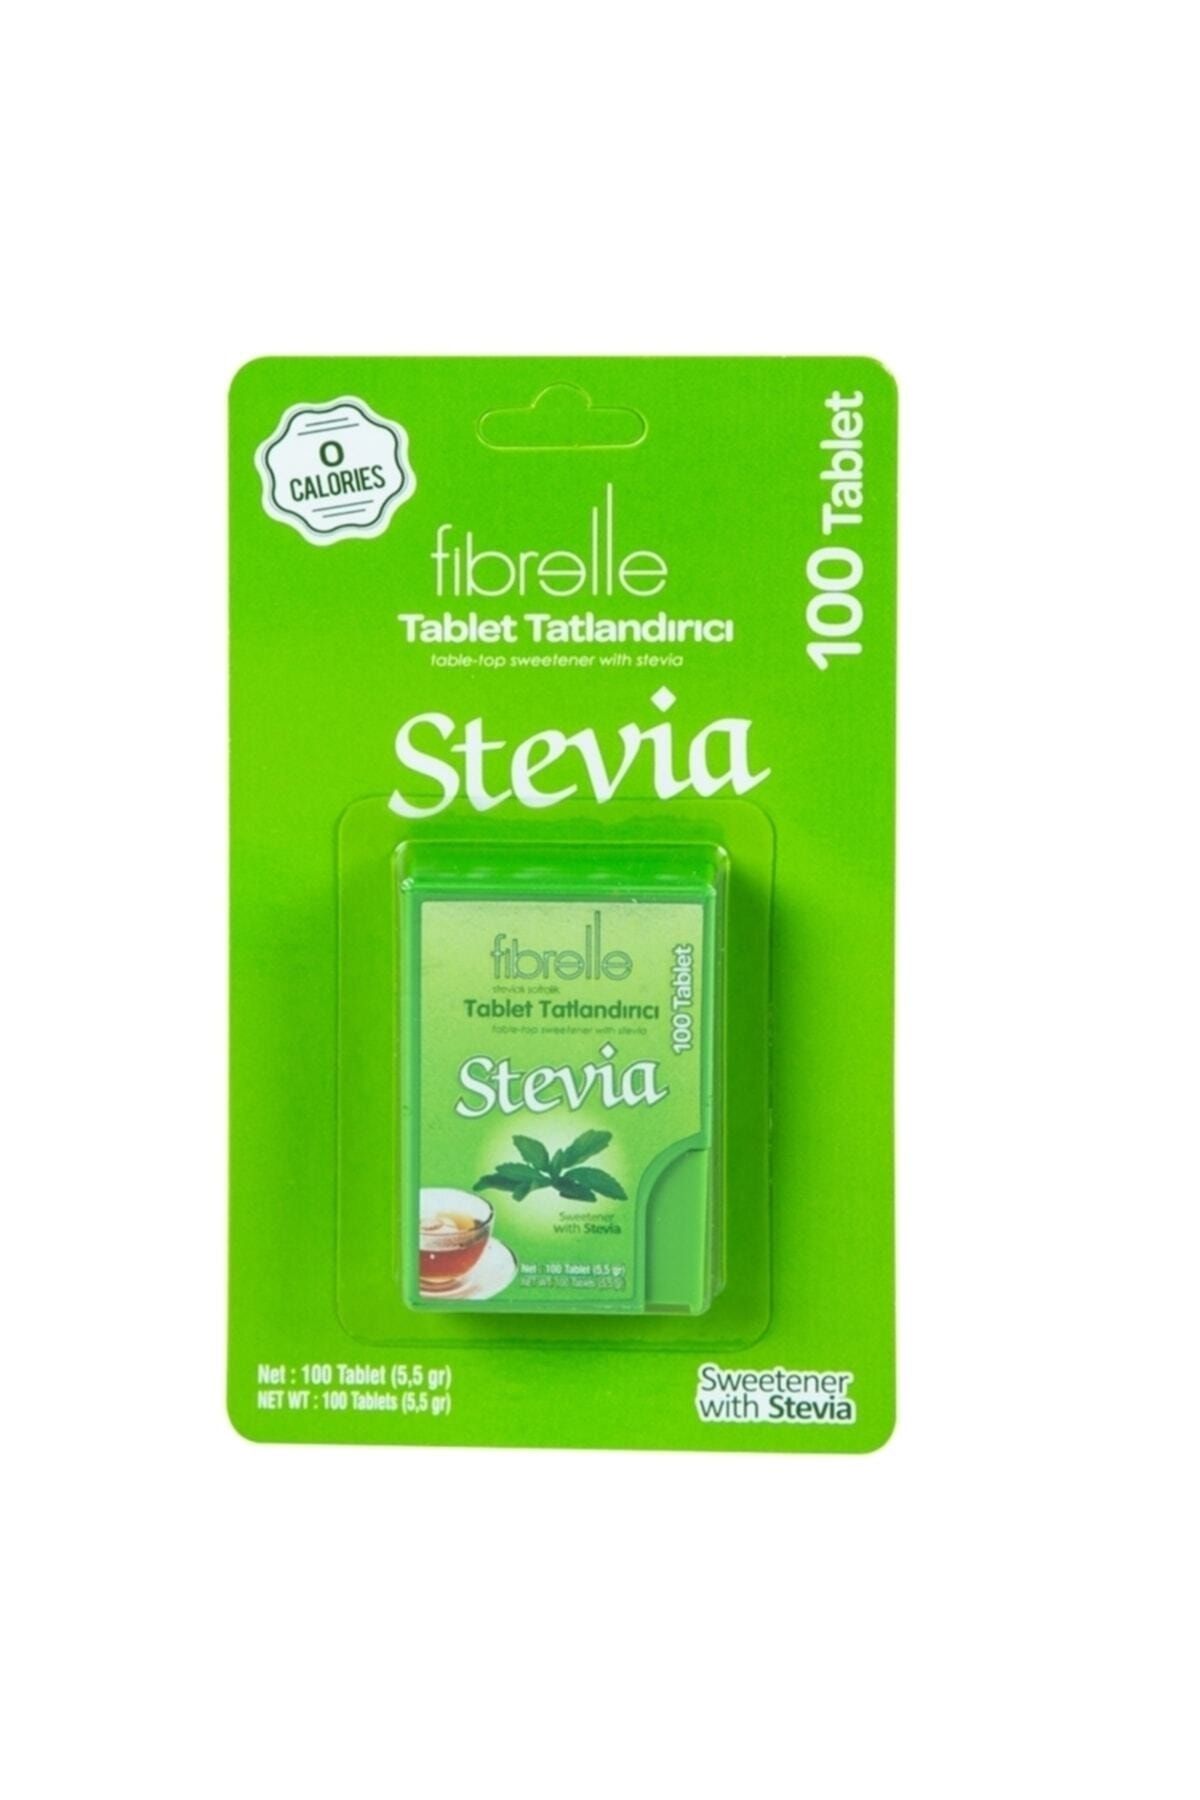 Fibrelle Stevia Lı Tablet Tatlandırıcı 100'lük Kutu 1 Paket